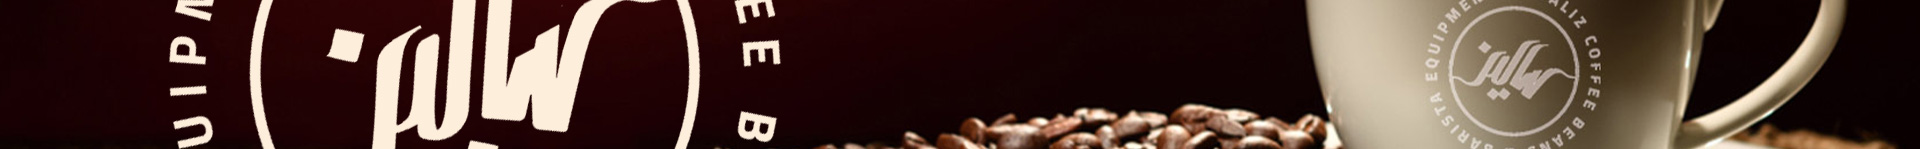 سالیز تولید کننده انواع قهوه در ایران